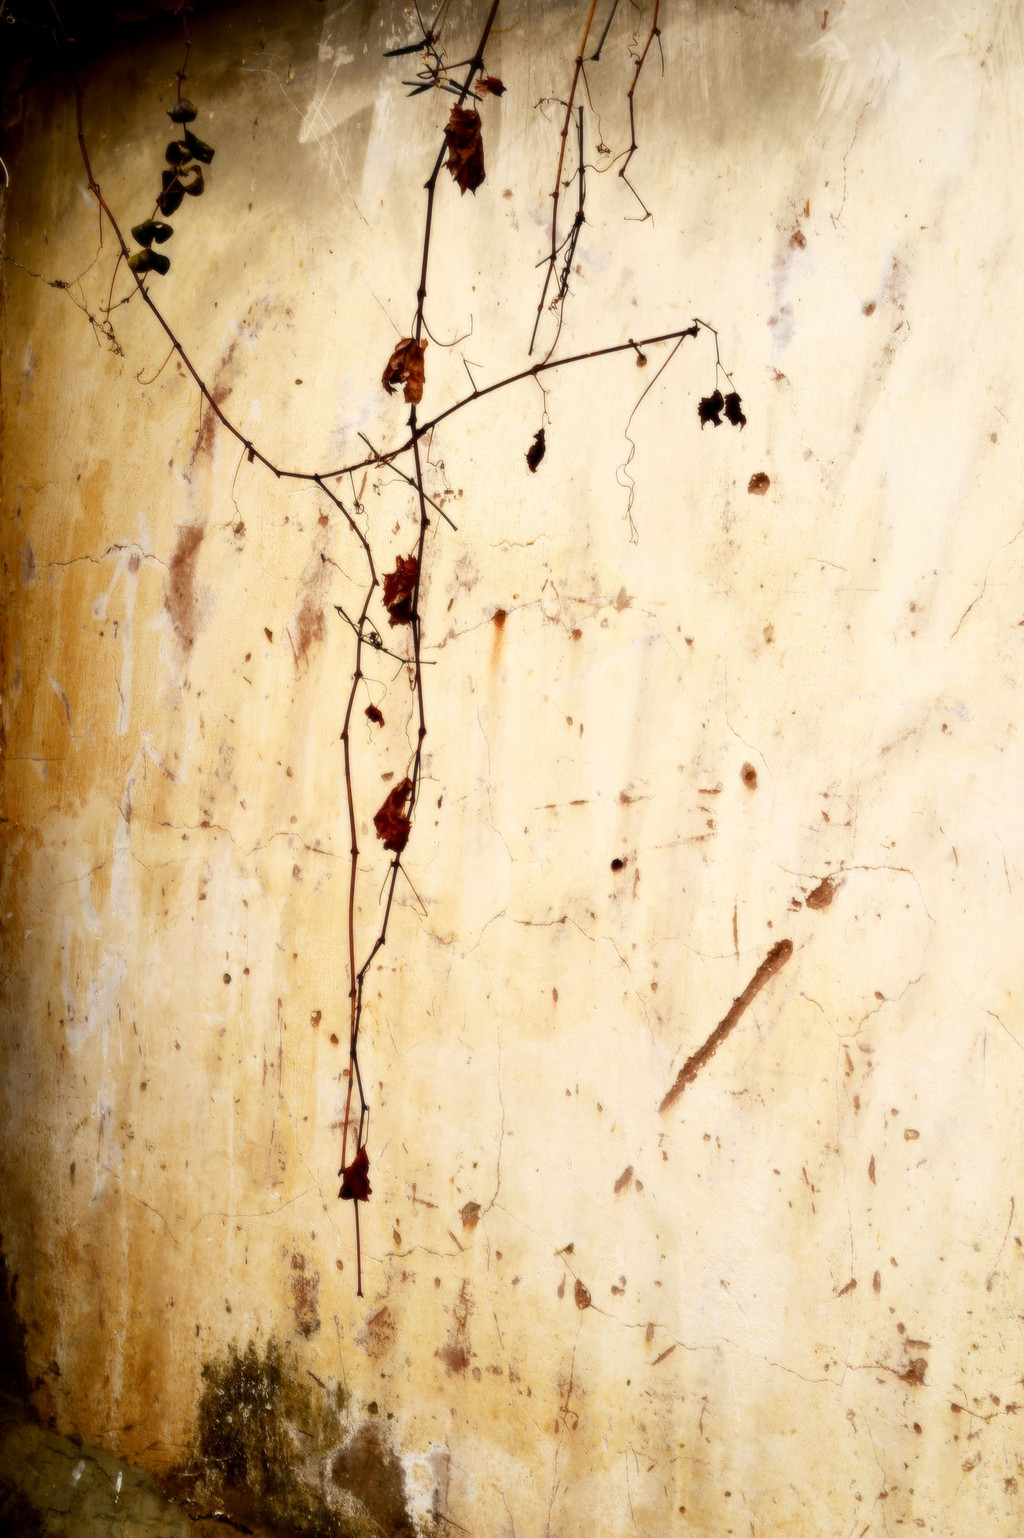 斑驳的墙面和枯叶,随意一拍,就是一副颇有几分水墨意境的作品